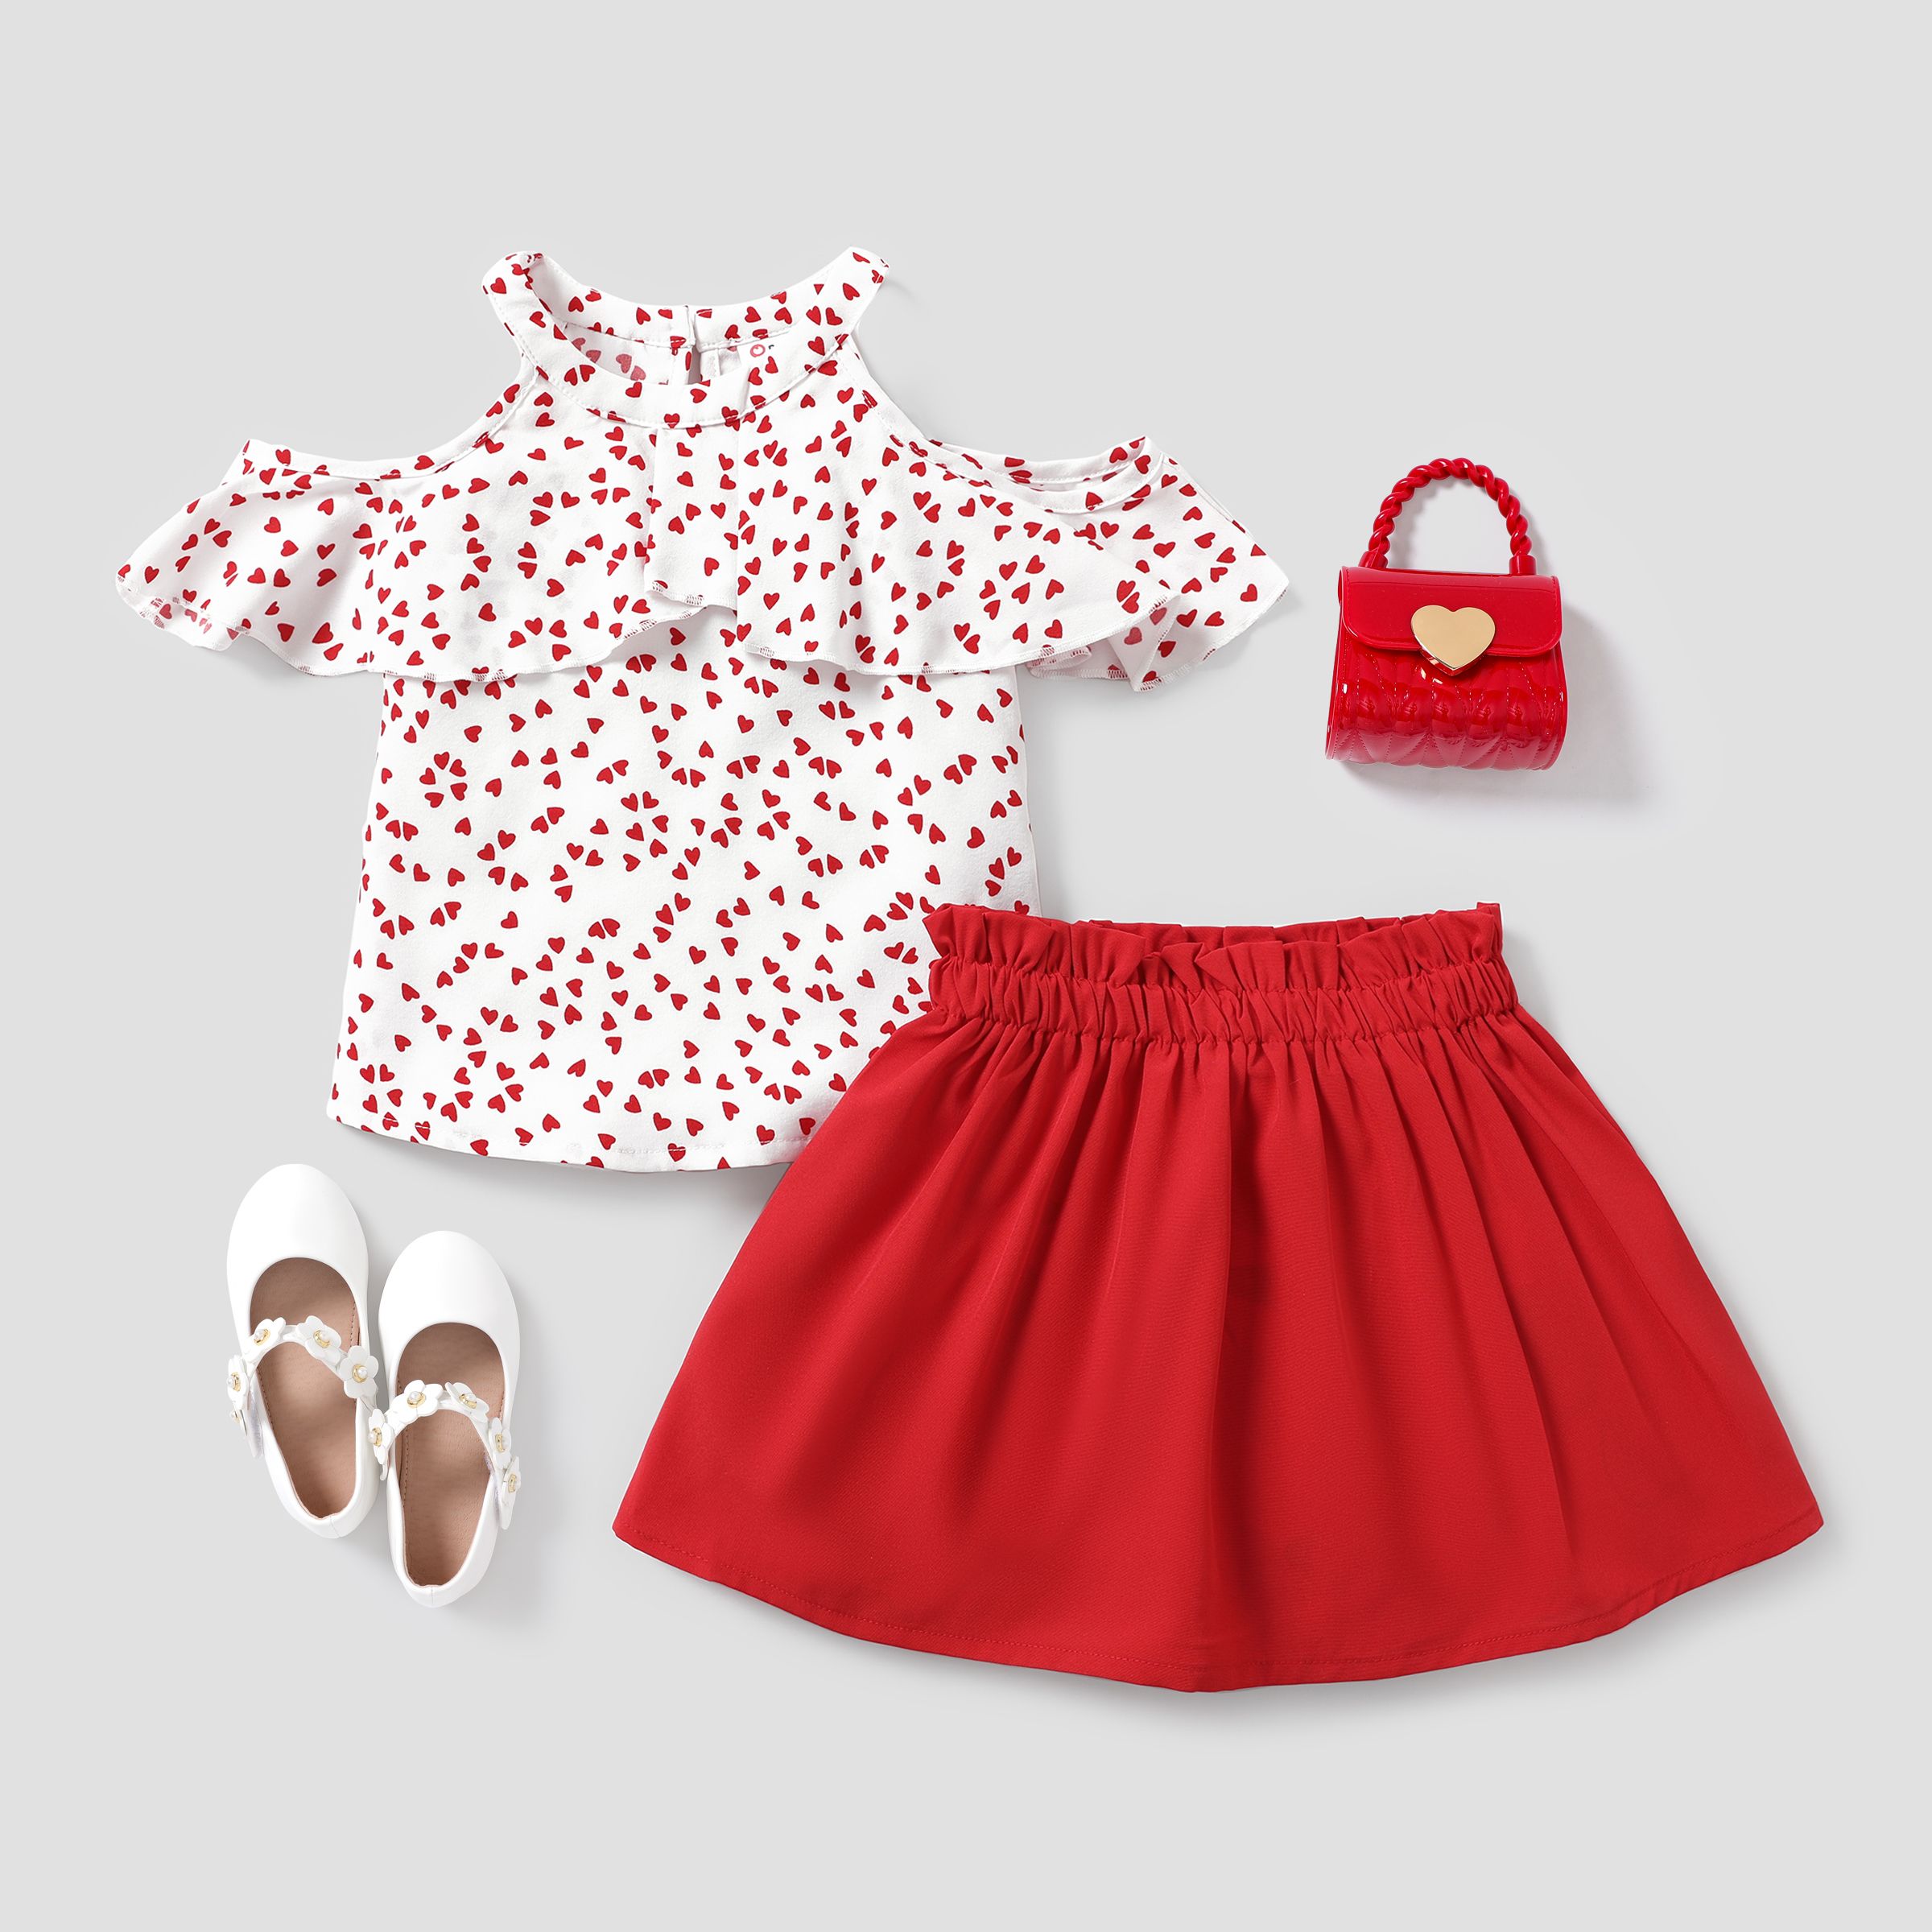 Toddler Girl Valentineâs Day Heart-shaped Sweet Dress